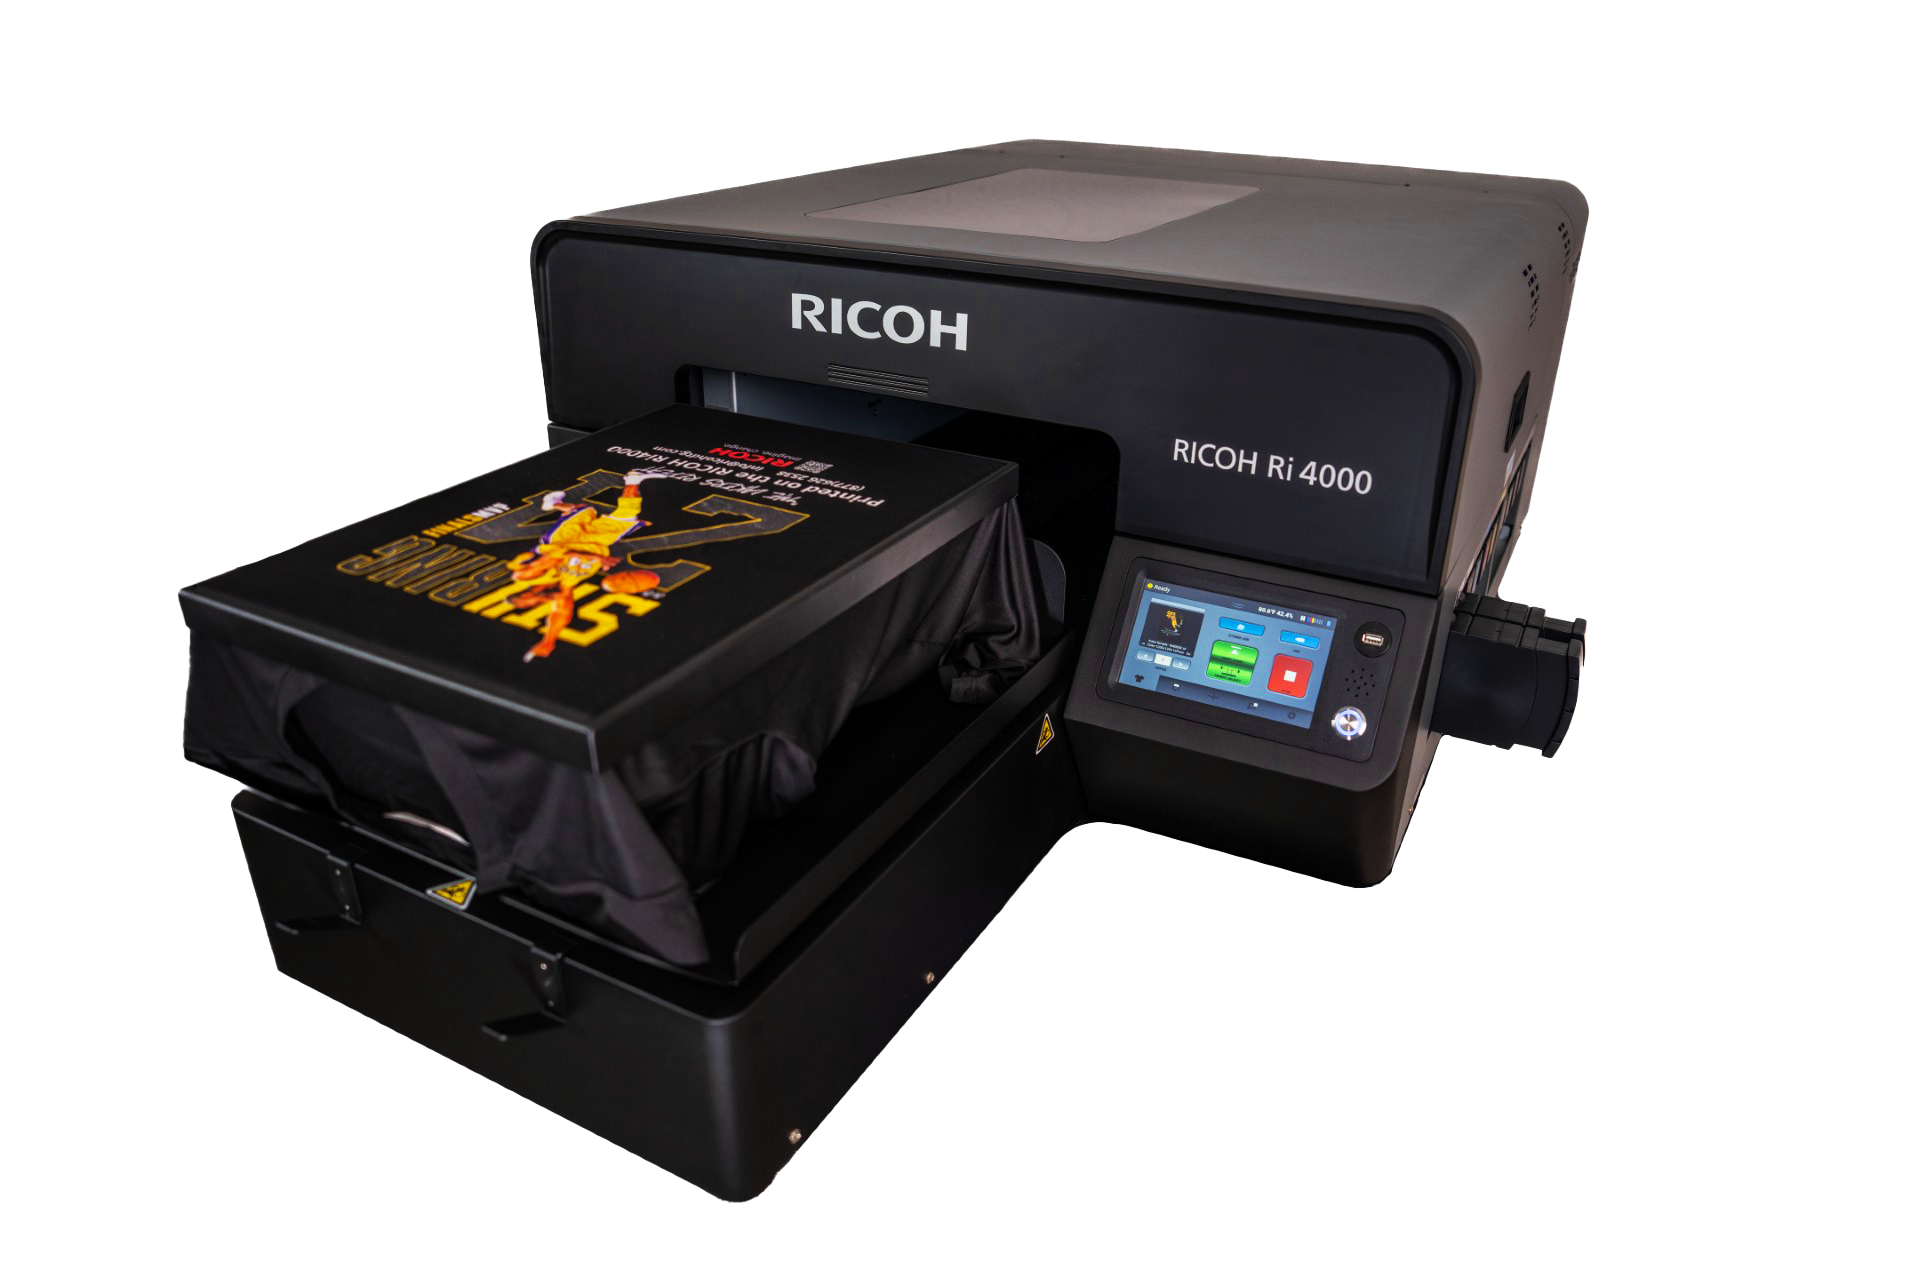 L’imprimante DTG RICOH Ri 4000 vient compléter le marché de l’impression sur polyester